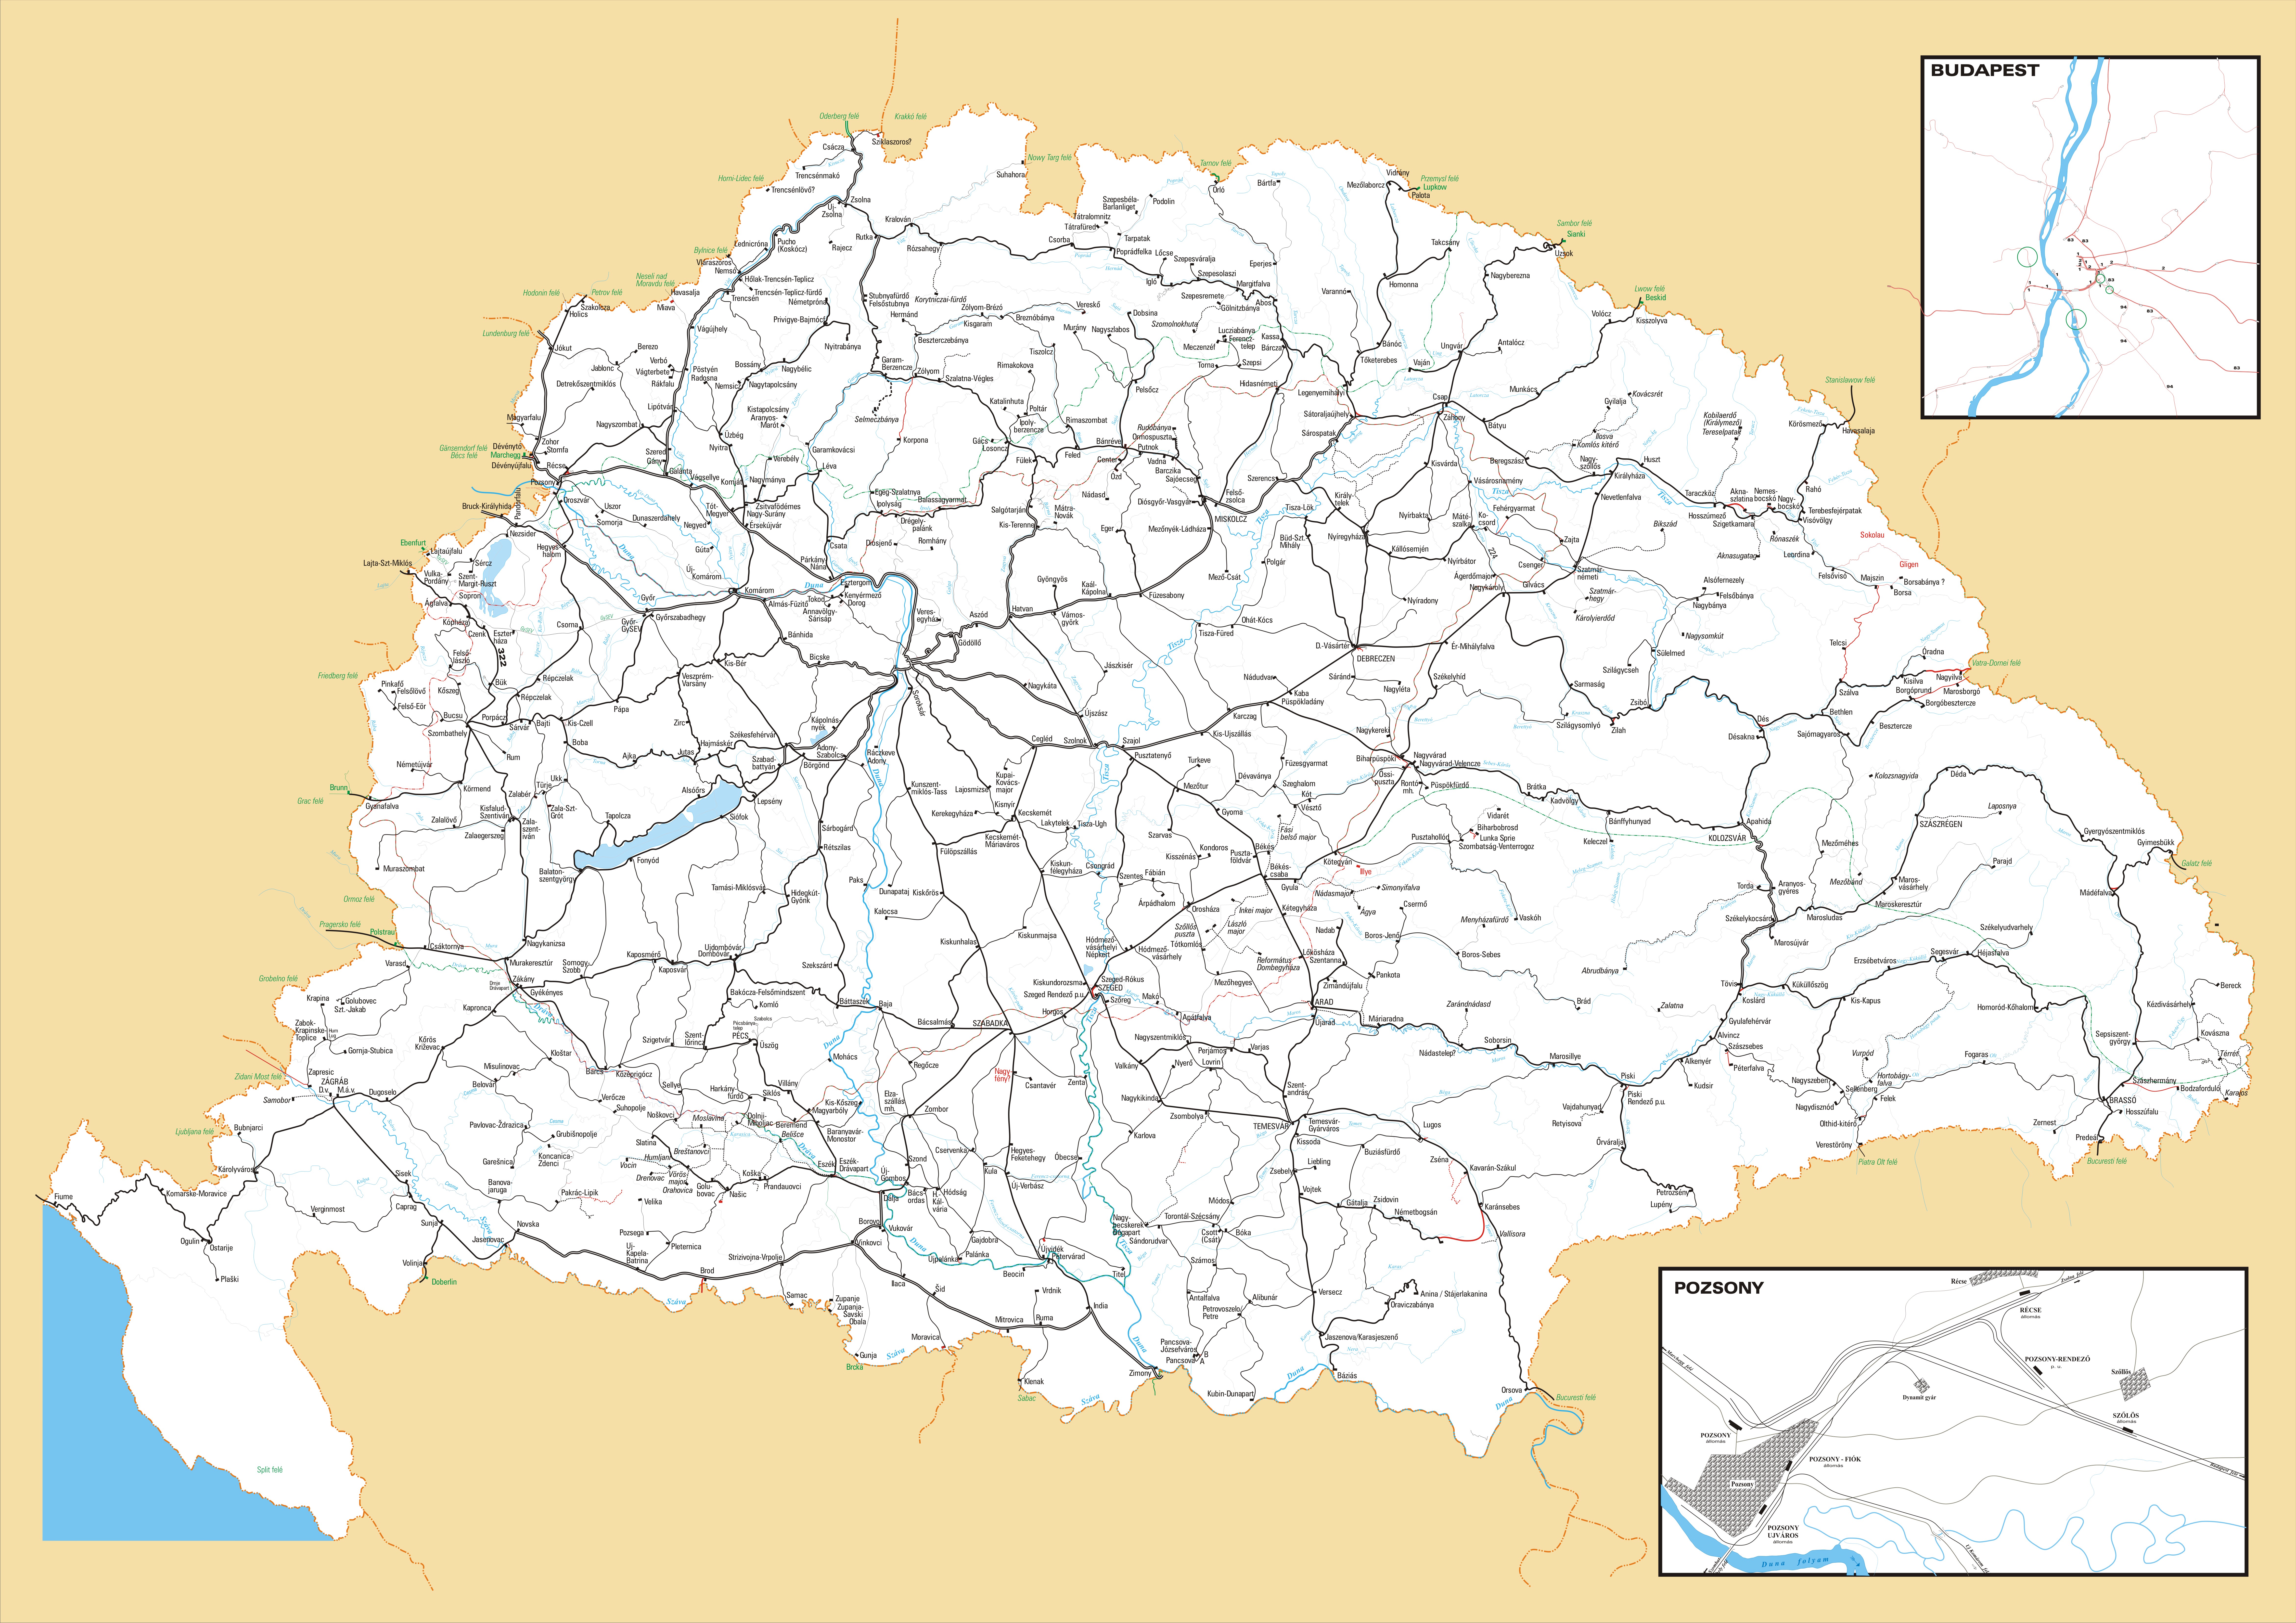 térkép nagy magyarország Vasúti térképek   Magyarország vasútállomásai és vasúti megállóhelyei térkép nagy magyarország